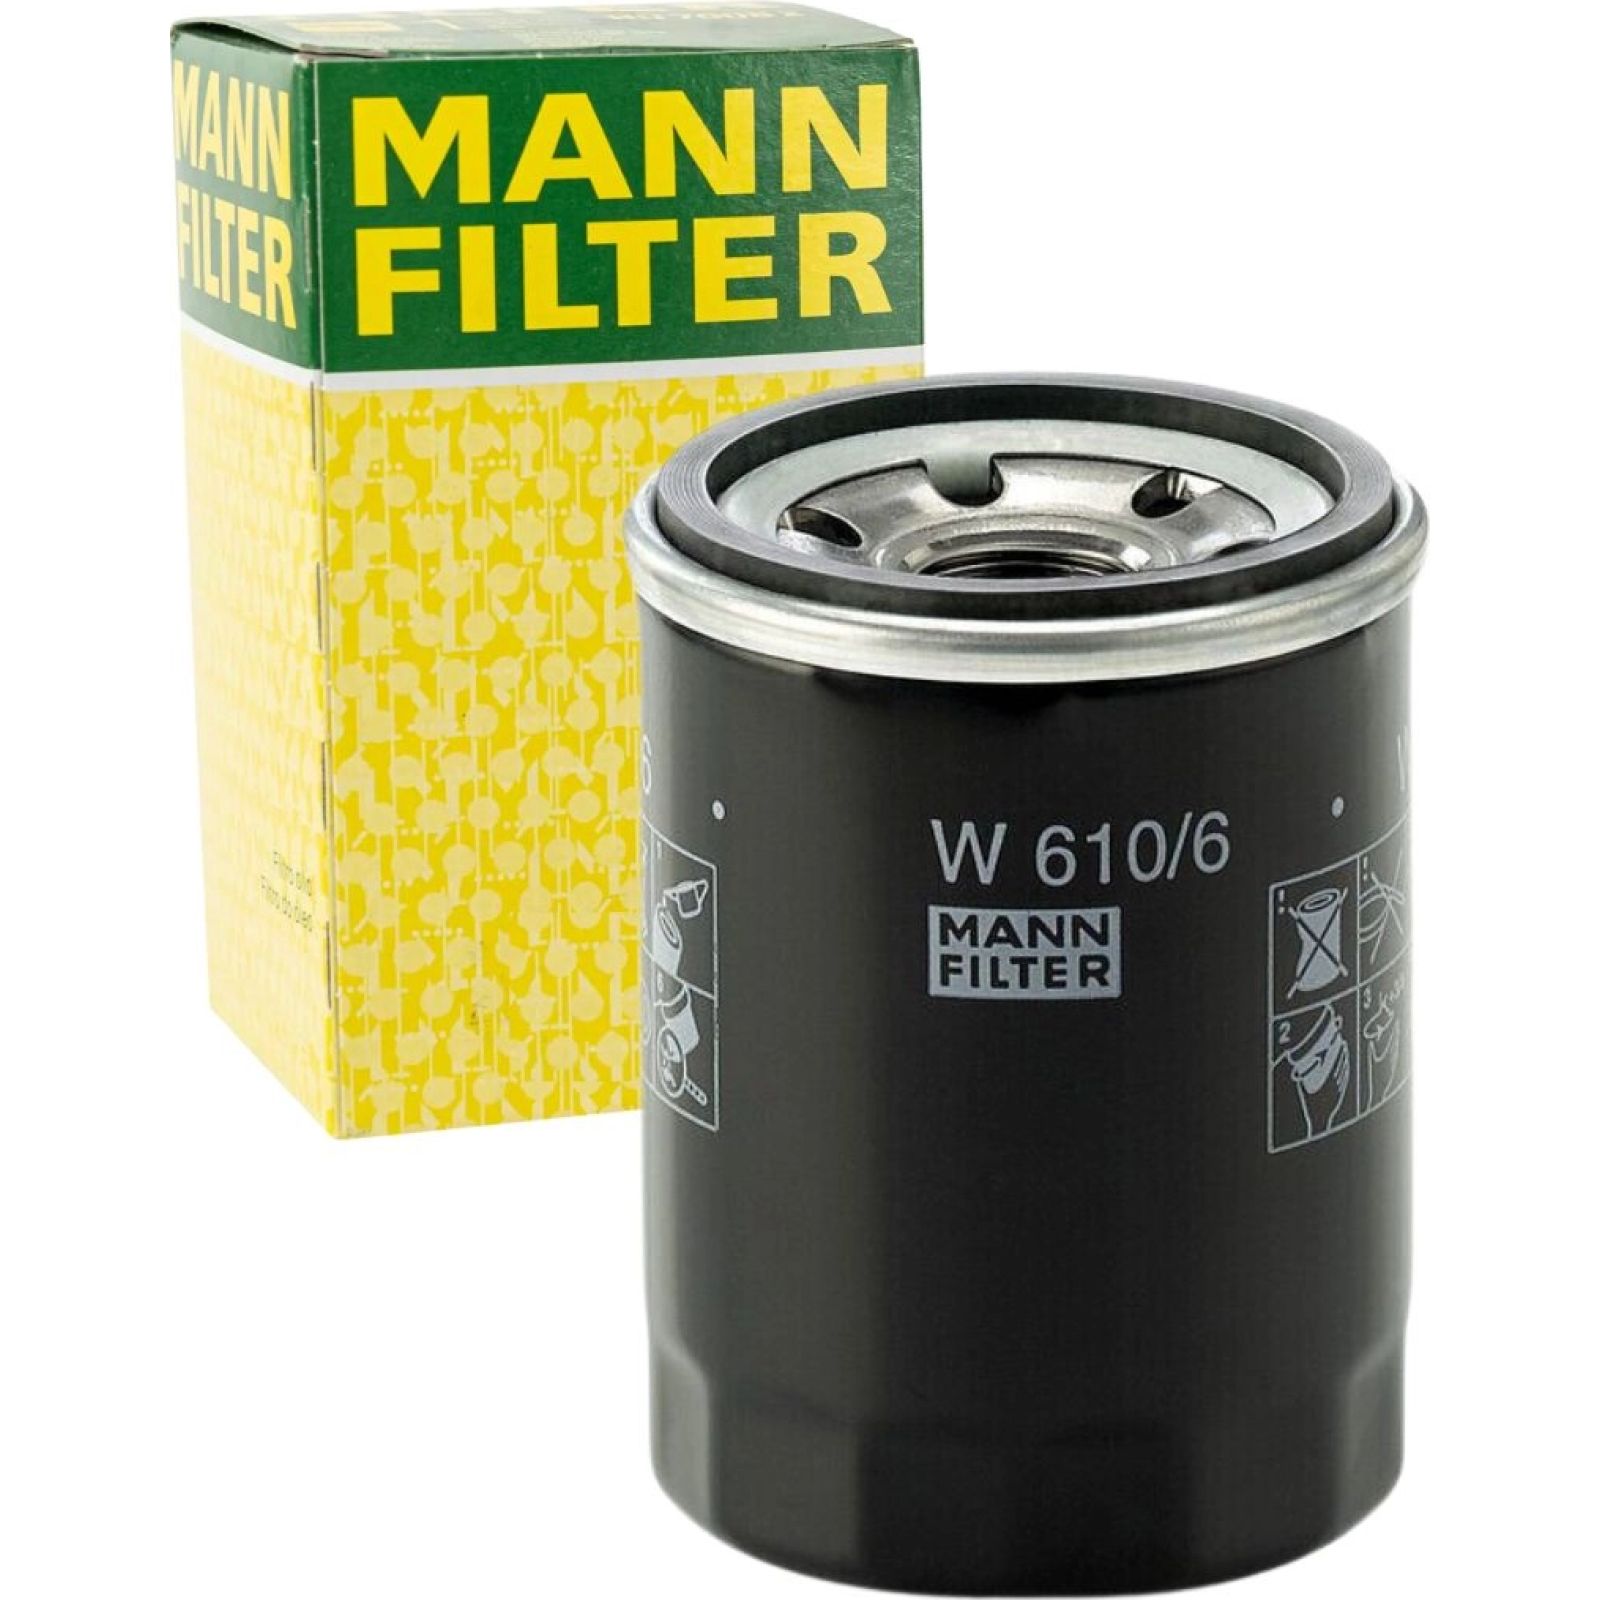 W 610/6 MANN-FILTER Ölfilter M 20 X 1.5, mit einem Rücklaufsperrventil,  Anschraubfilter